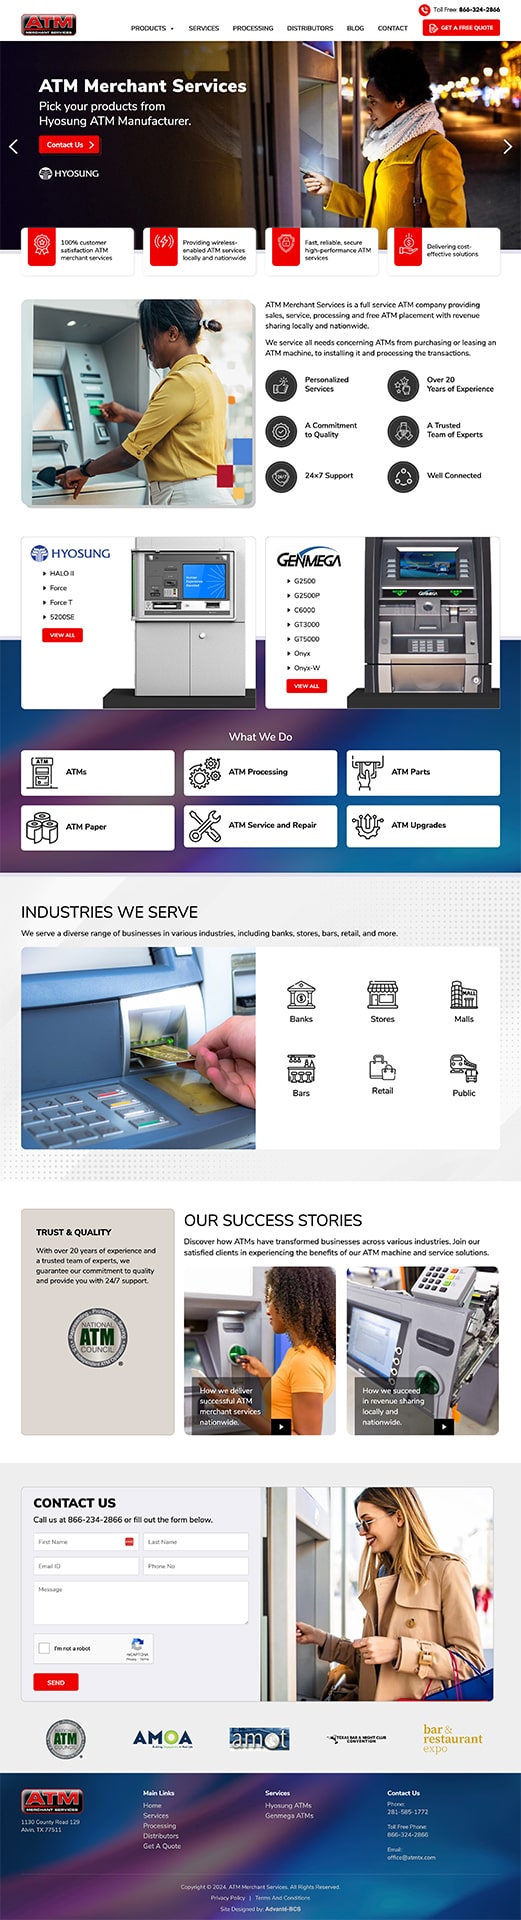 ATM Merchant Services